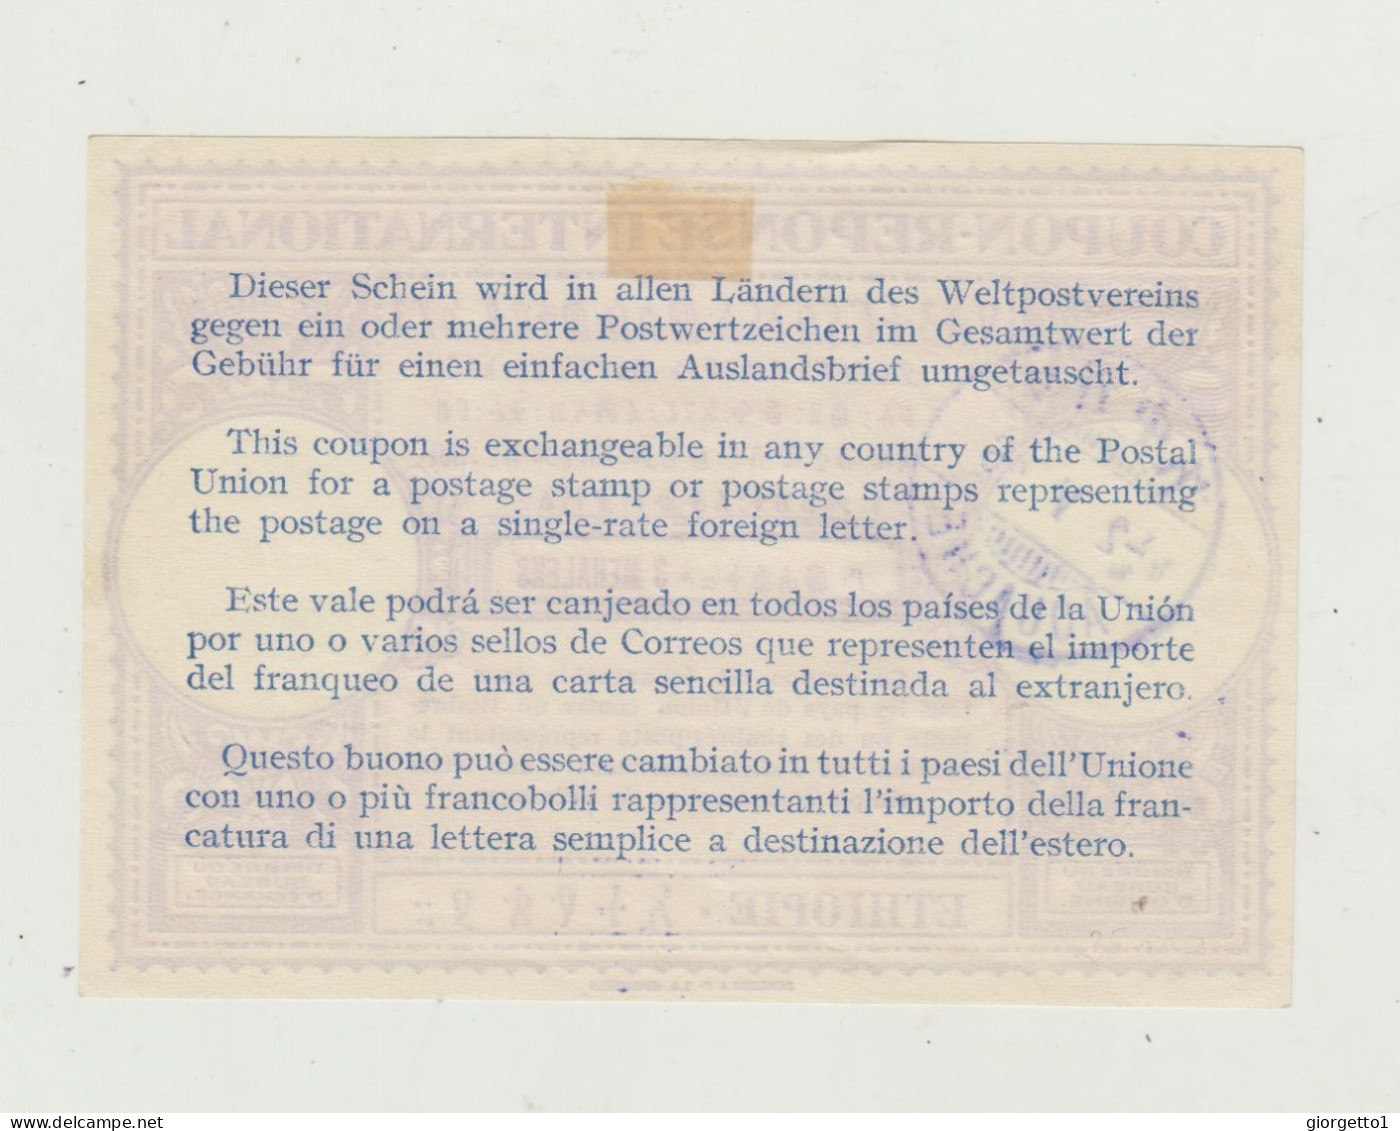 TAGLIANDO - RICEVUTA - COUPON  POSTALE PER FRANCOBOLLI SPEDIZIONE INTERNAZIONALE - ETIOPIA -DEL 1936 - AFRICA ORIENTALE - Poststempel